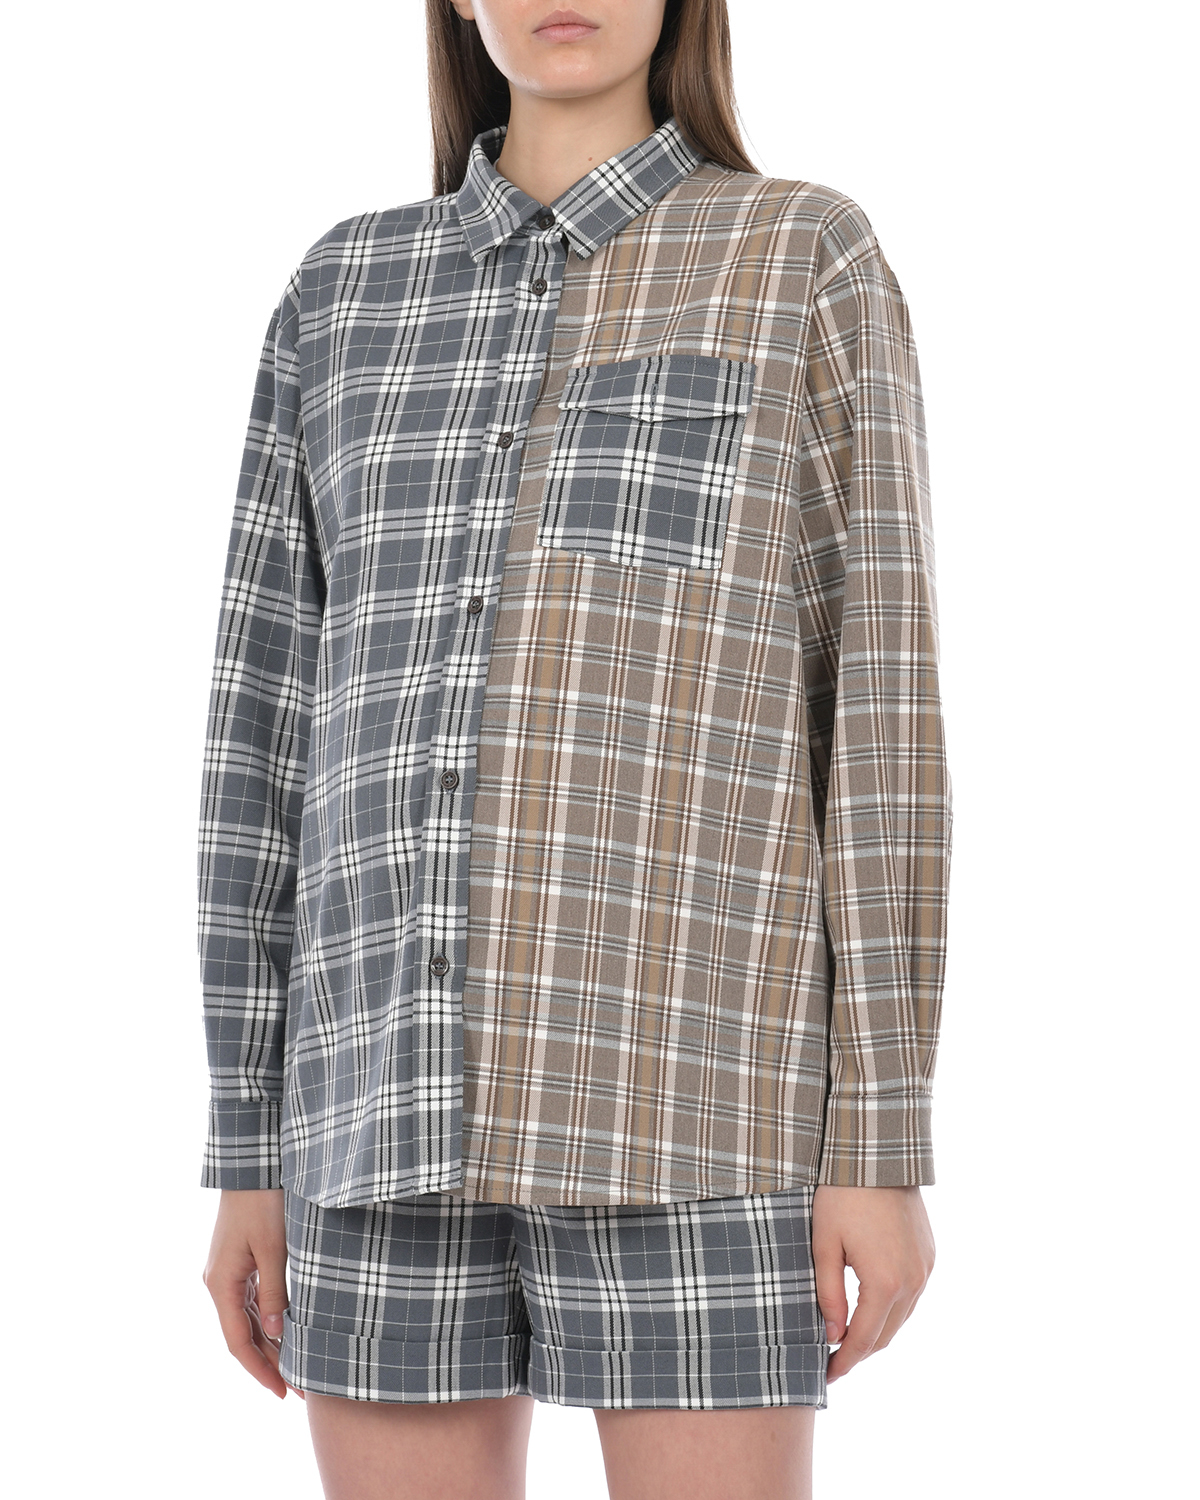 Комбинированная рубашка в клетку Dan Maralex, размер 46, цвет серый - фото 6